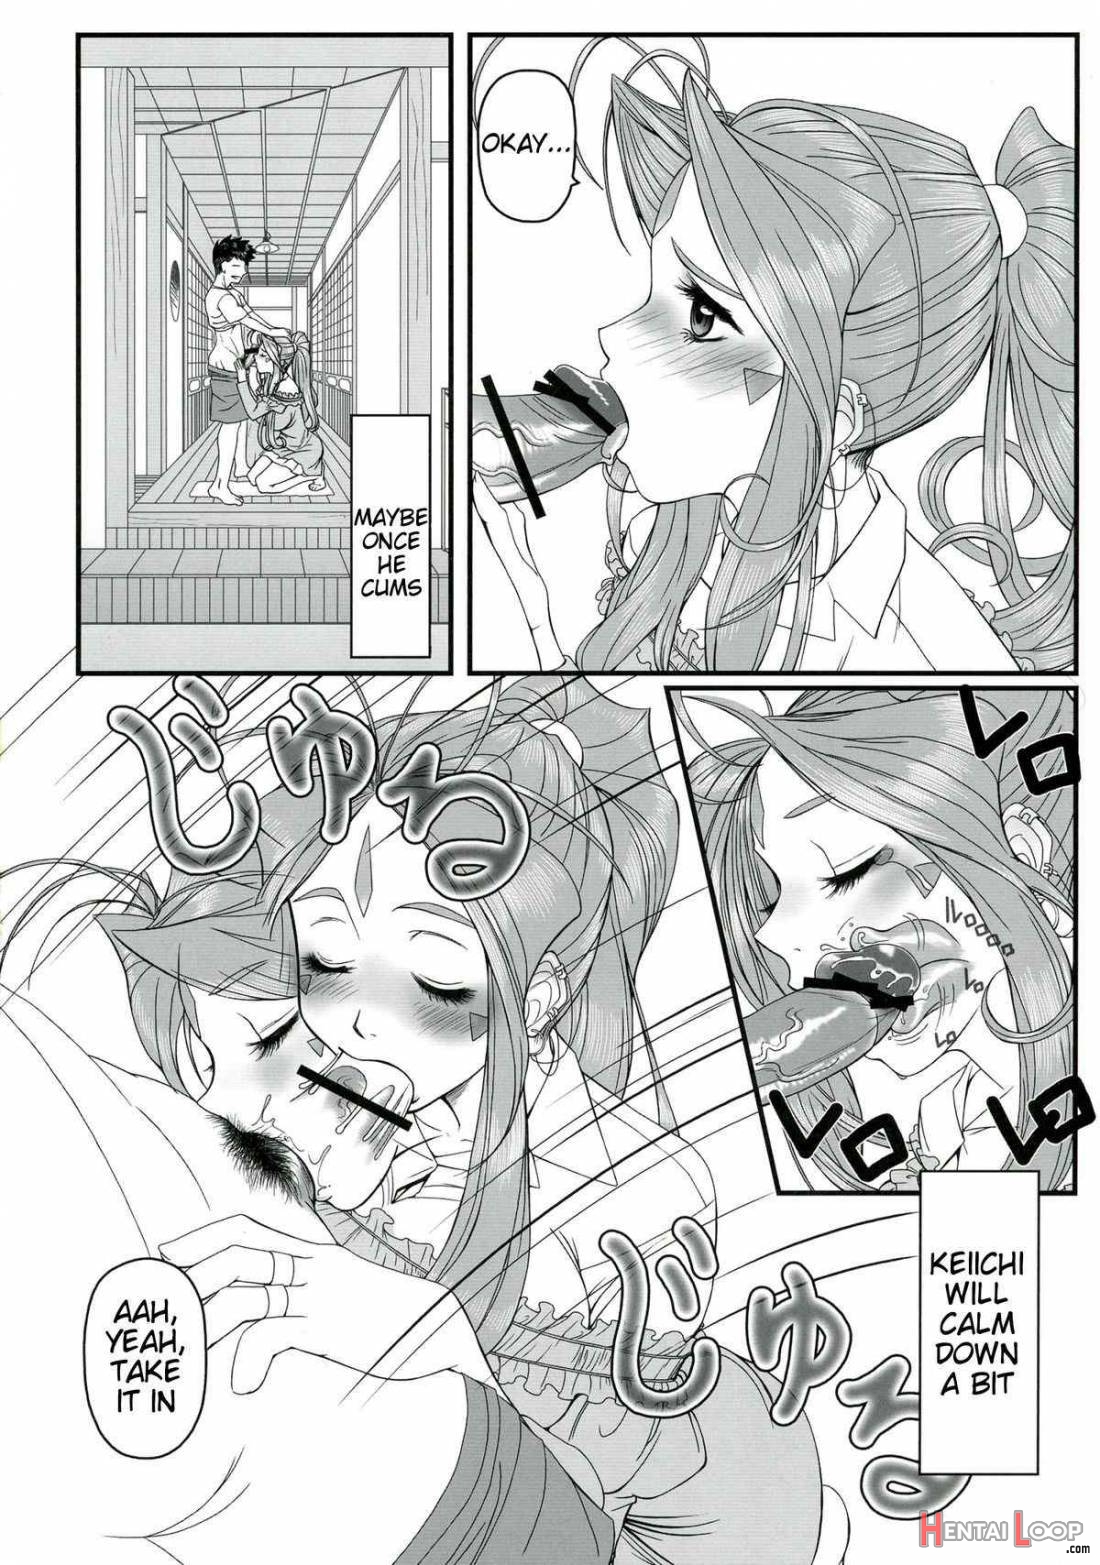 Gangu Megami 1 page 9